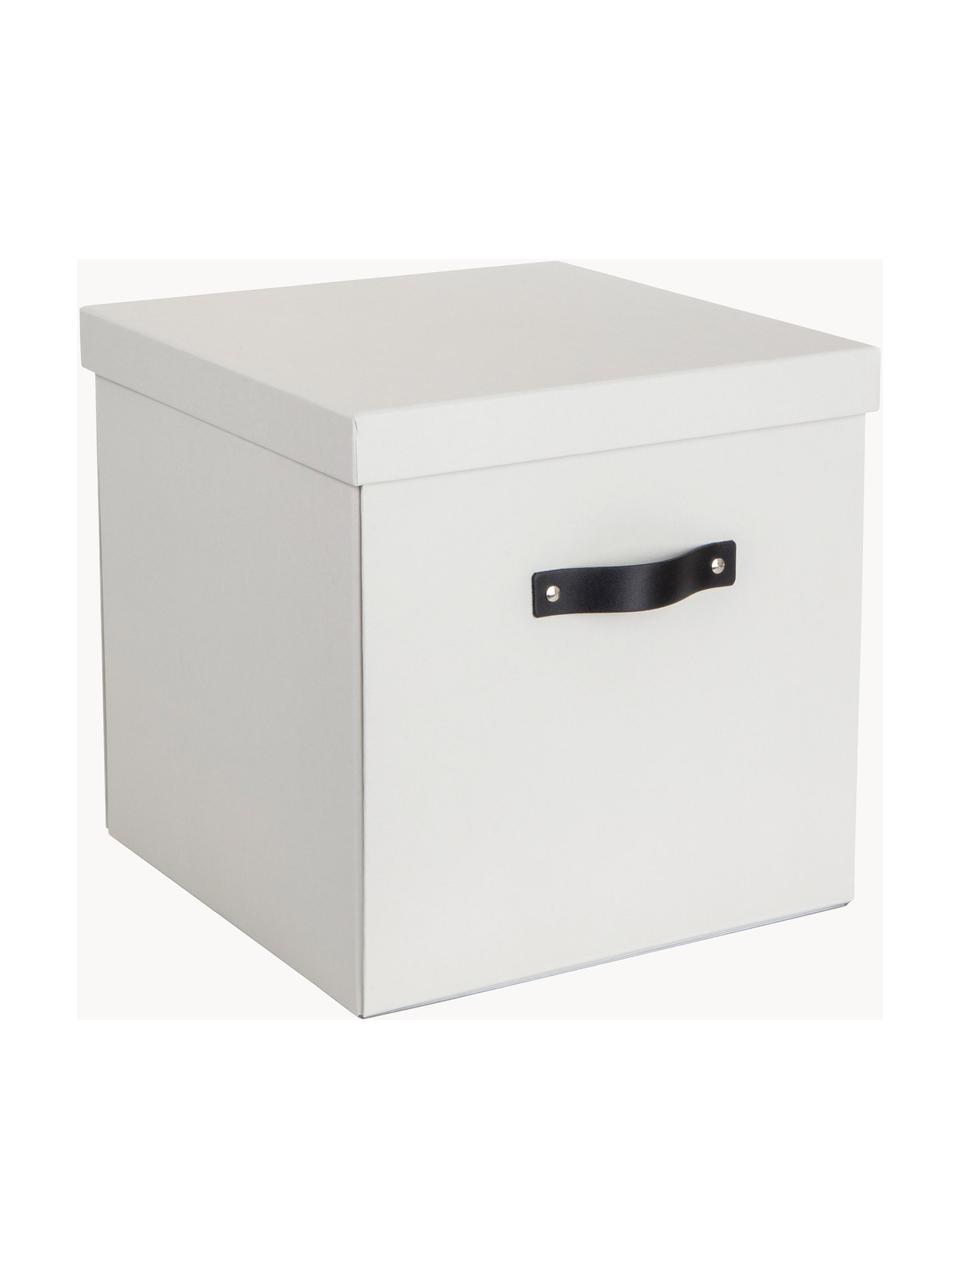 Pudełko do przechowywania Logan, Biały, S 32 x G 32 cm